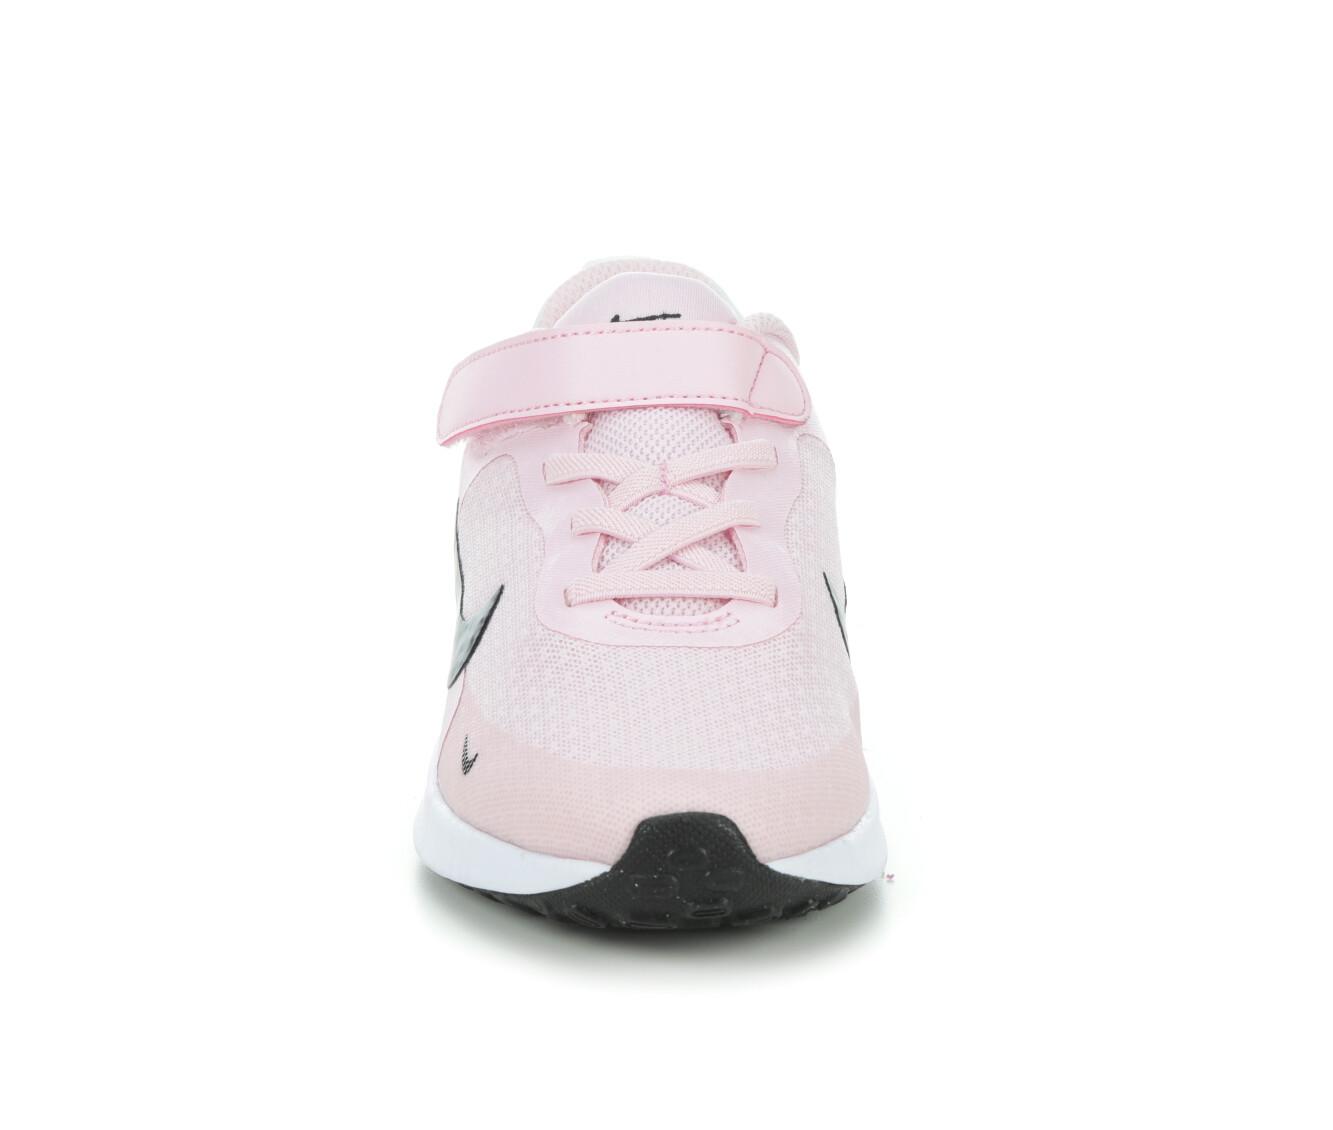 Girls' Nike Toddler & Little Kid Revolution 7 Running Shoes